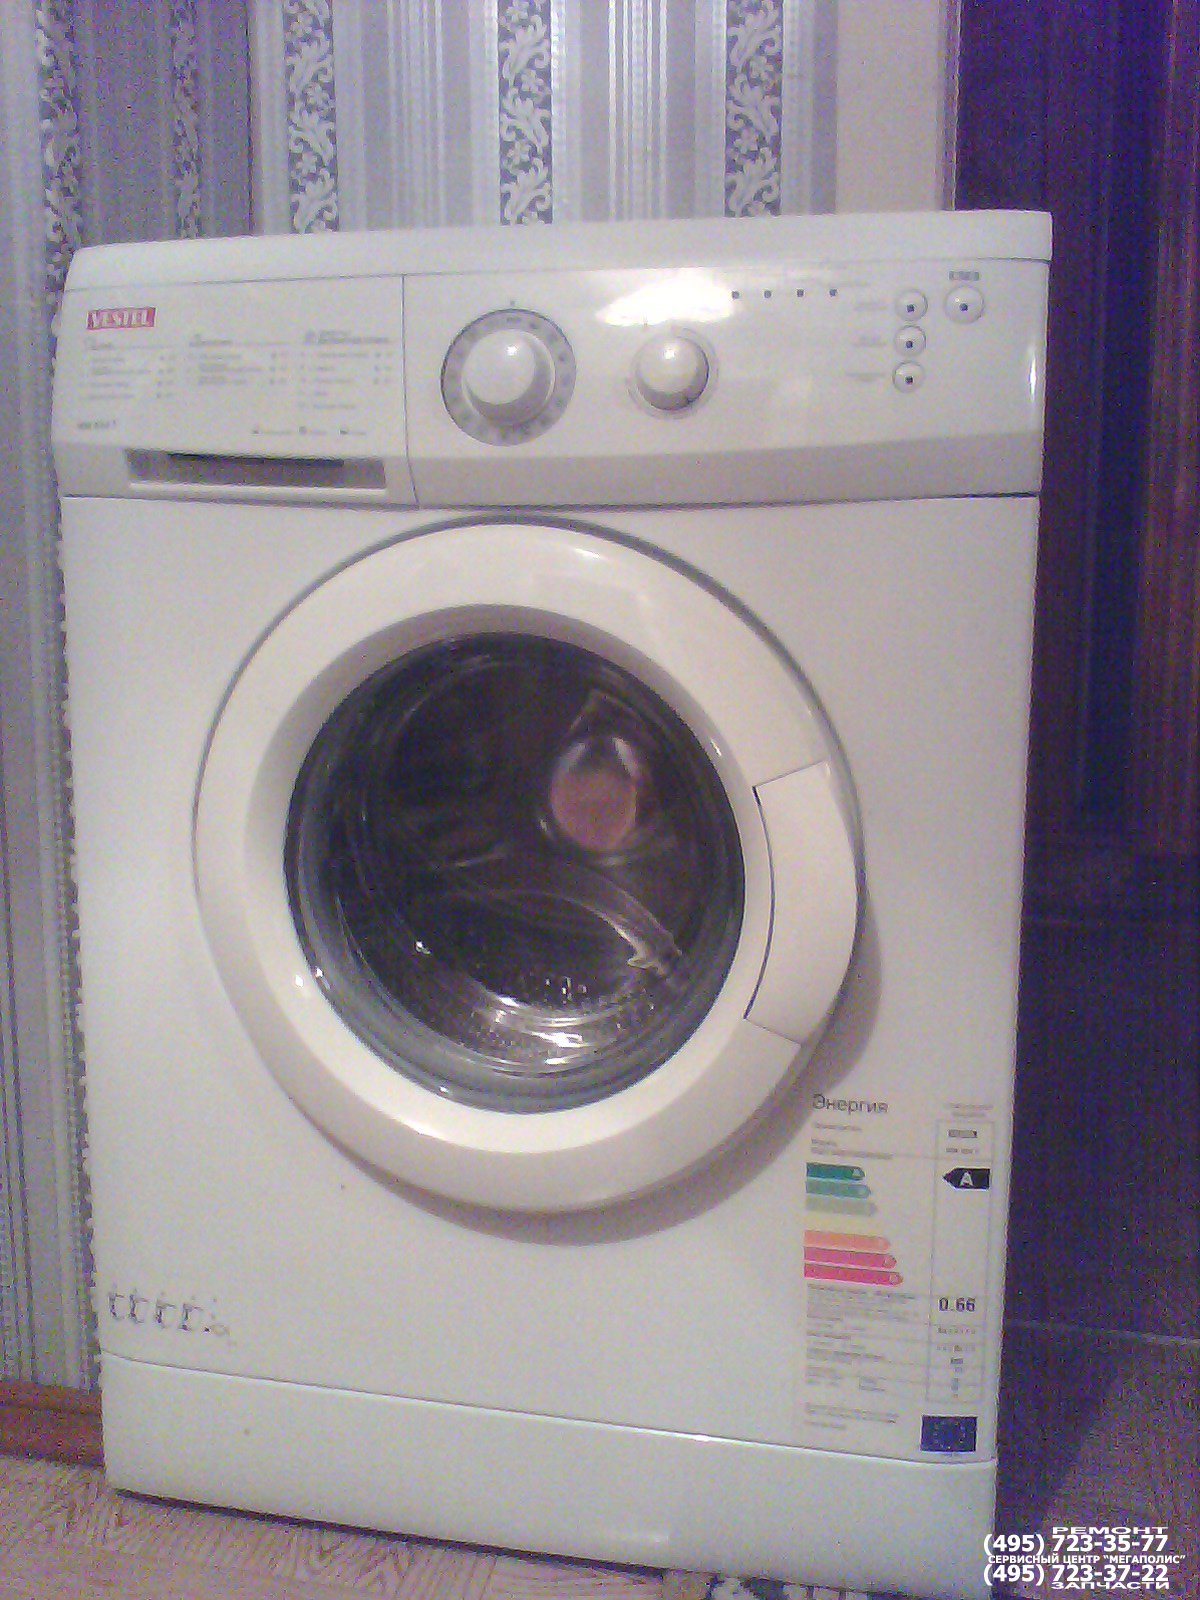 Ремонт стиральных машин в Харькове